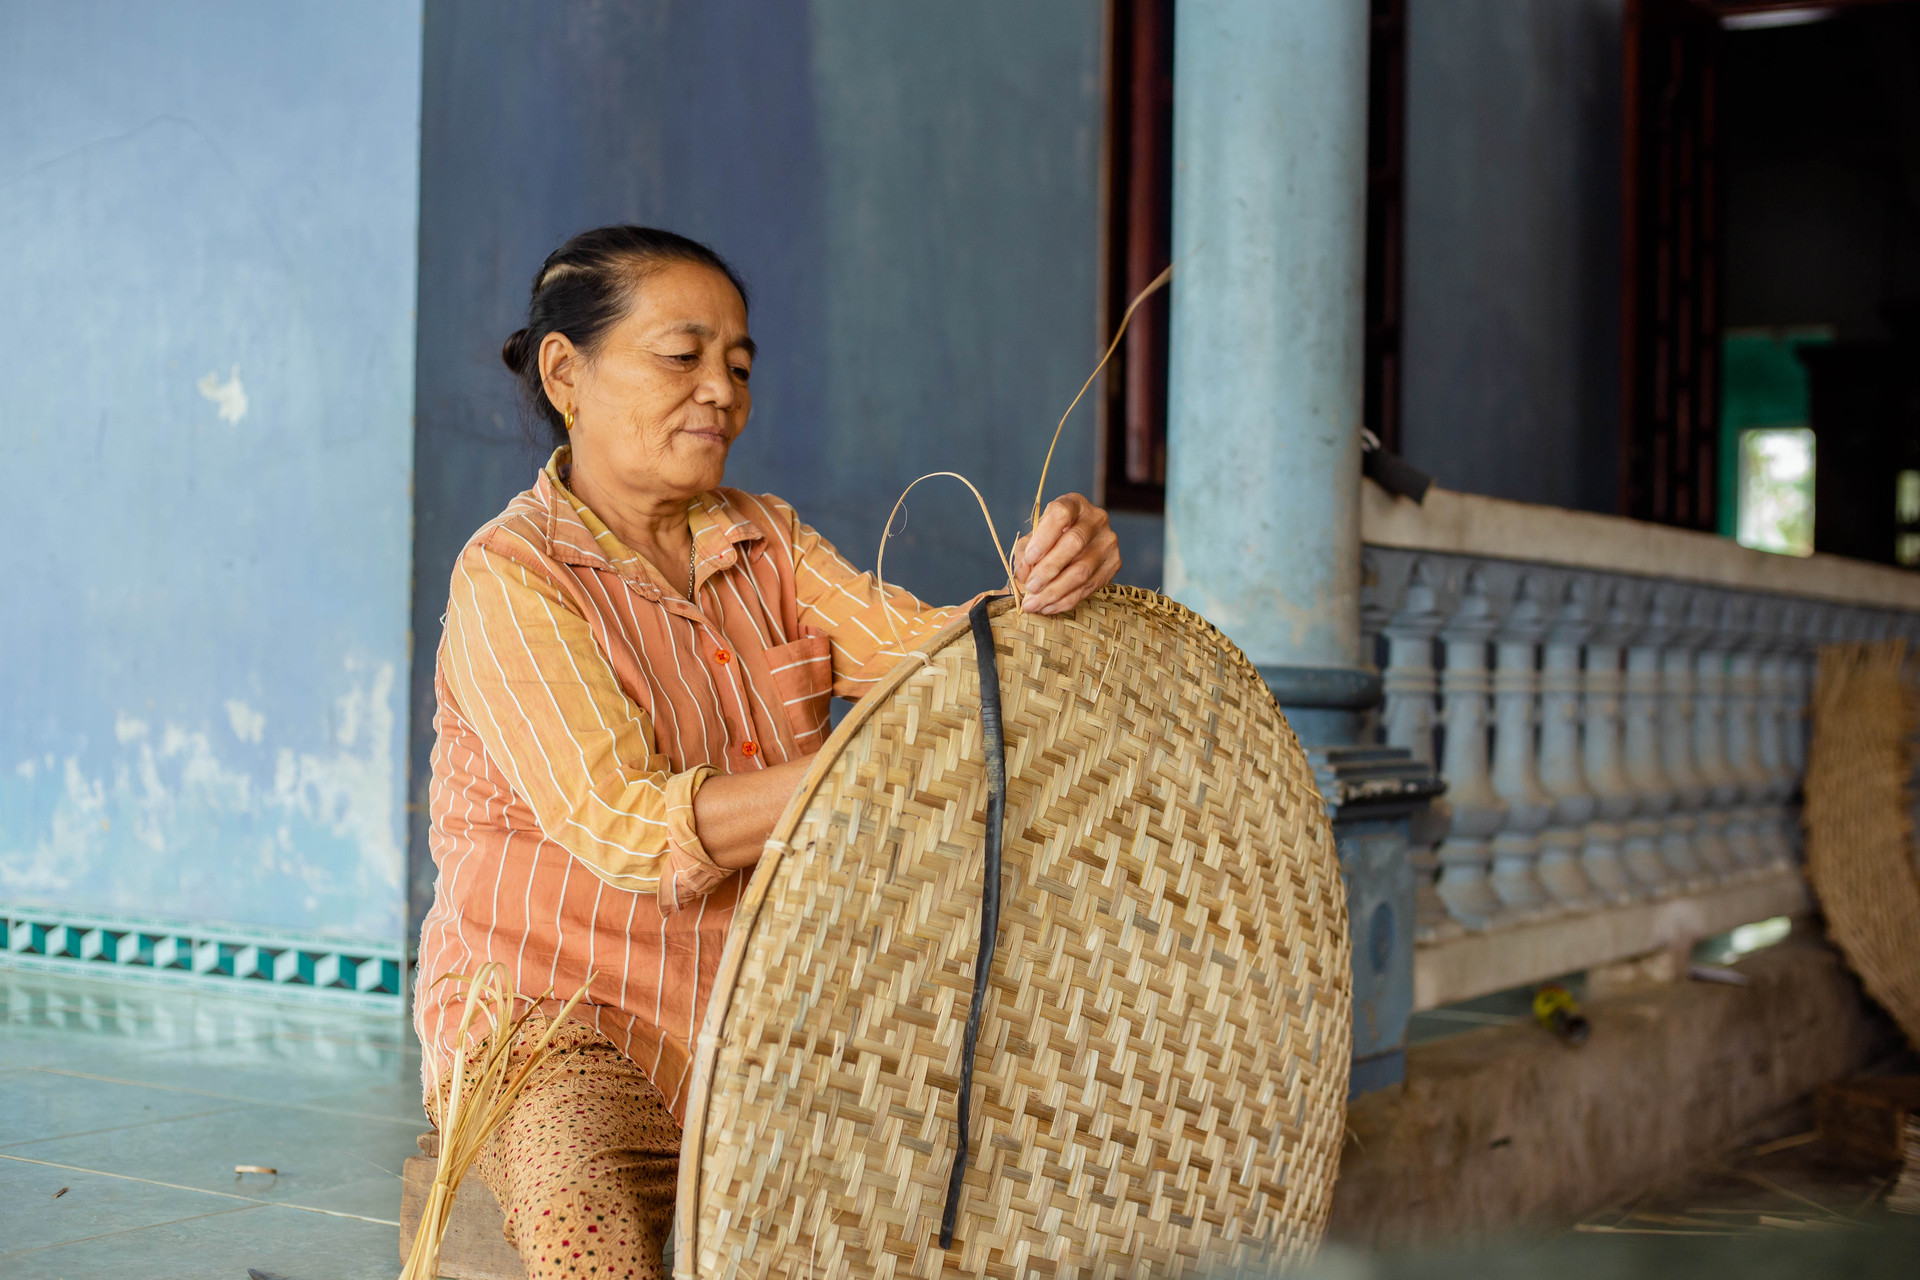 Hiện nay, làng nghề Thọ Đơn có khoảng 510/887 hộ làm nghề đan lát, tạo công việc, thu nhập ổn định từ 3 - 4 triệu đồng/người/tháng. Sản phẩm của làng đã được tiểu thương mang đi các tỉnh như Huế, Đà Nẵng, Hội An… và rất được khách hàng ưa chuộng.